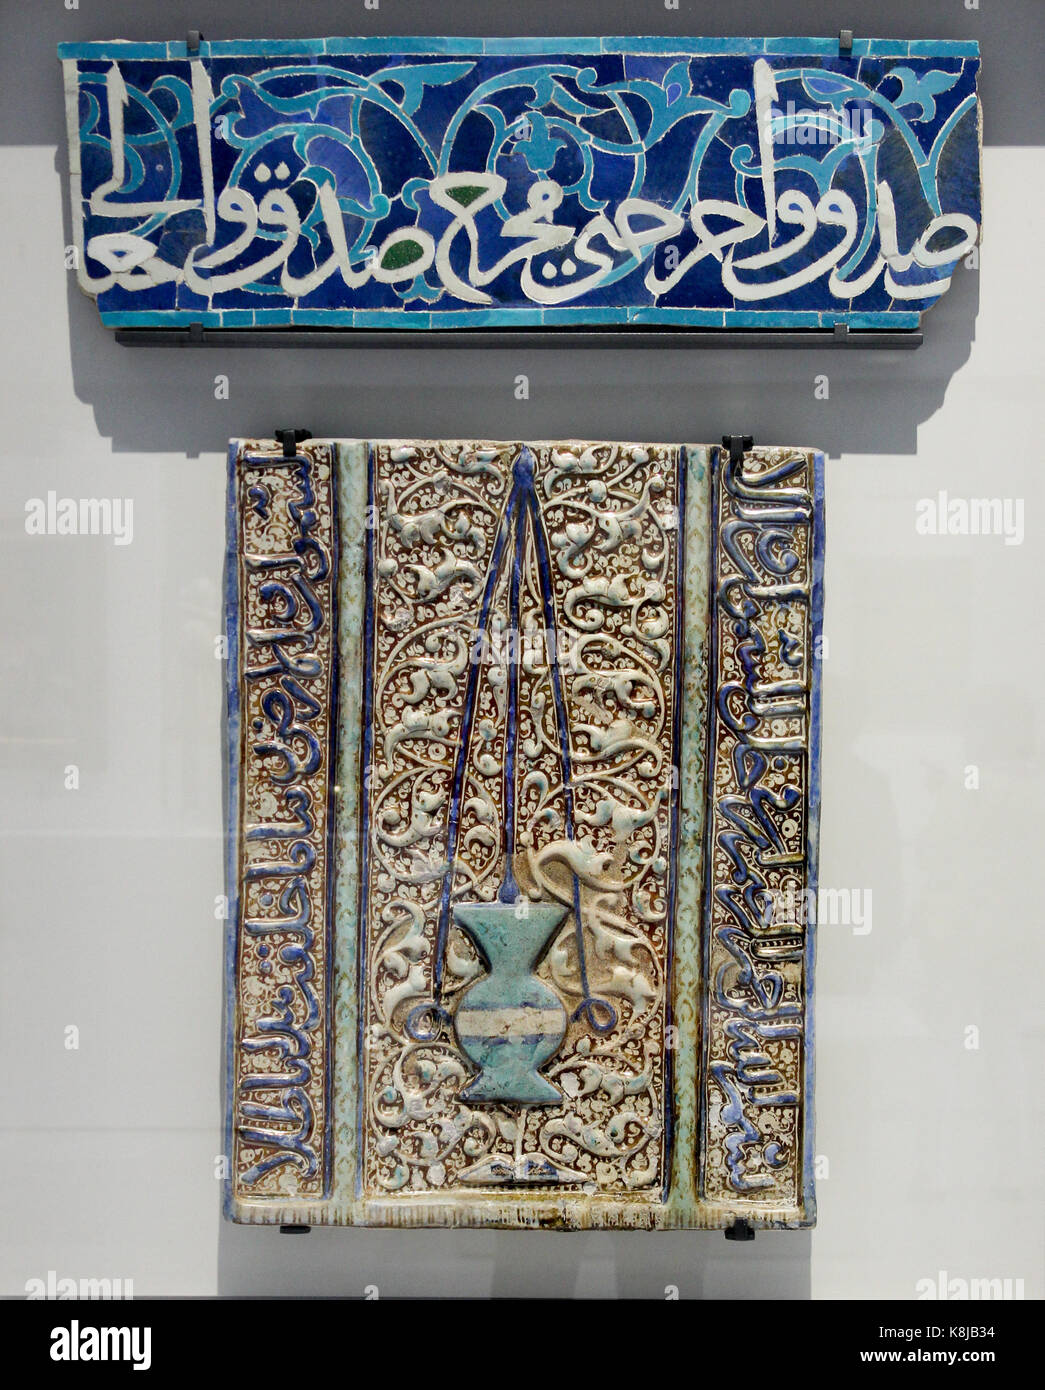 Elemento de un friso arquitectónico: Inscripción qu'ranic en letra árabe cursiva. Irán o Asia Central. Mosaico cerámico. 1375-1400 DC. Foto de stock